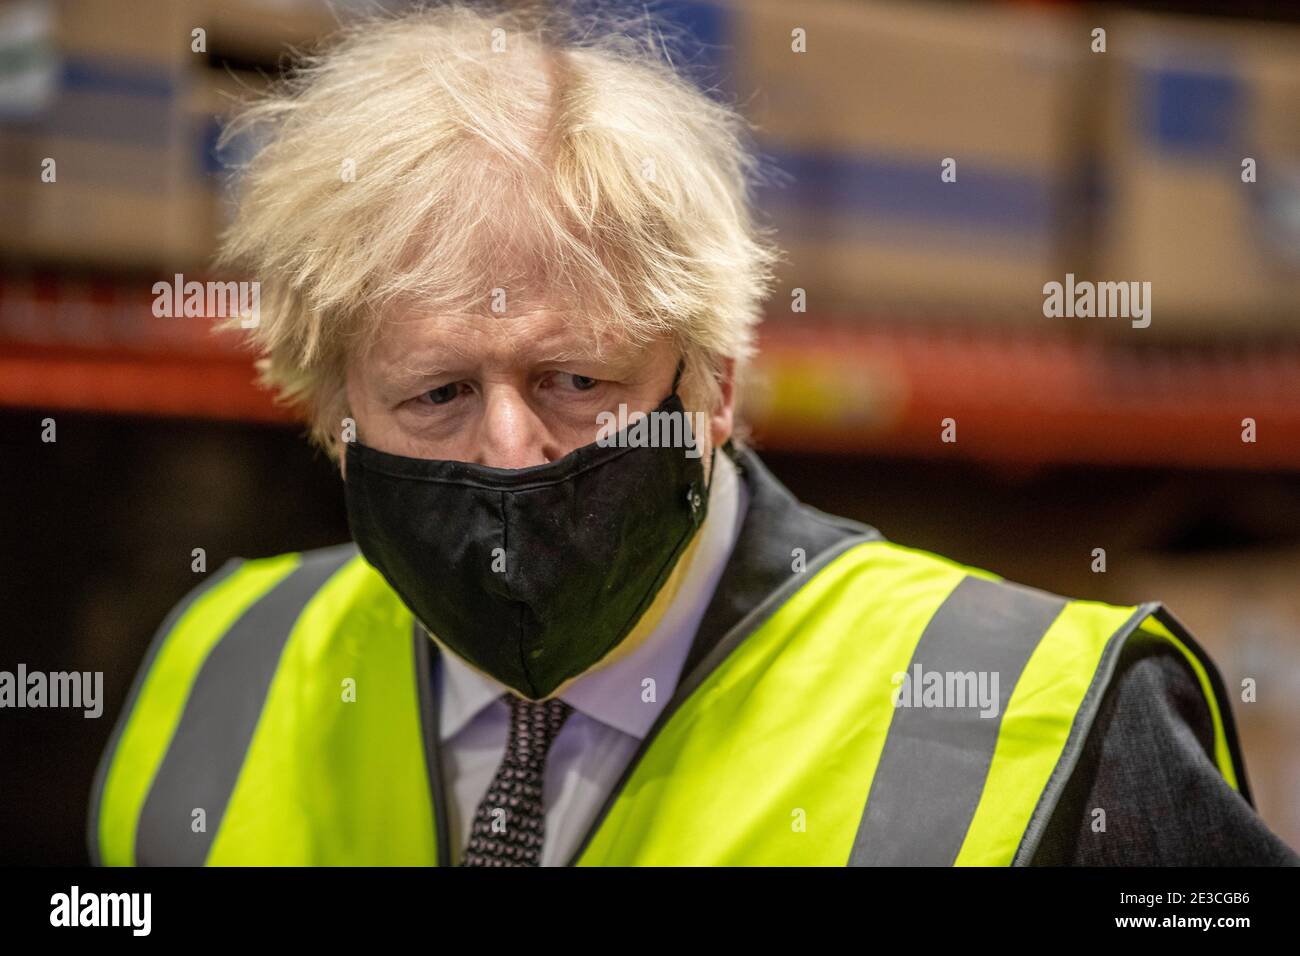 Le Premier ministre Boris Johnson, lors d'une visite de l'usine de fabrication du vaccin Oxford/AstraZeneca à Oxford Biomedica dans l'Oxfordshire. Date de la photo: Lundi 18 janvier 2021. Banque D'Images